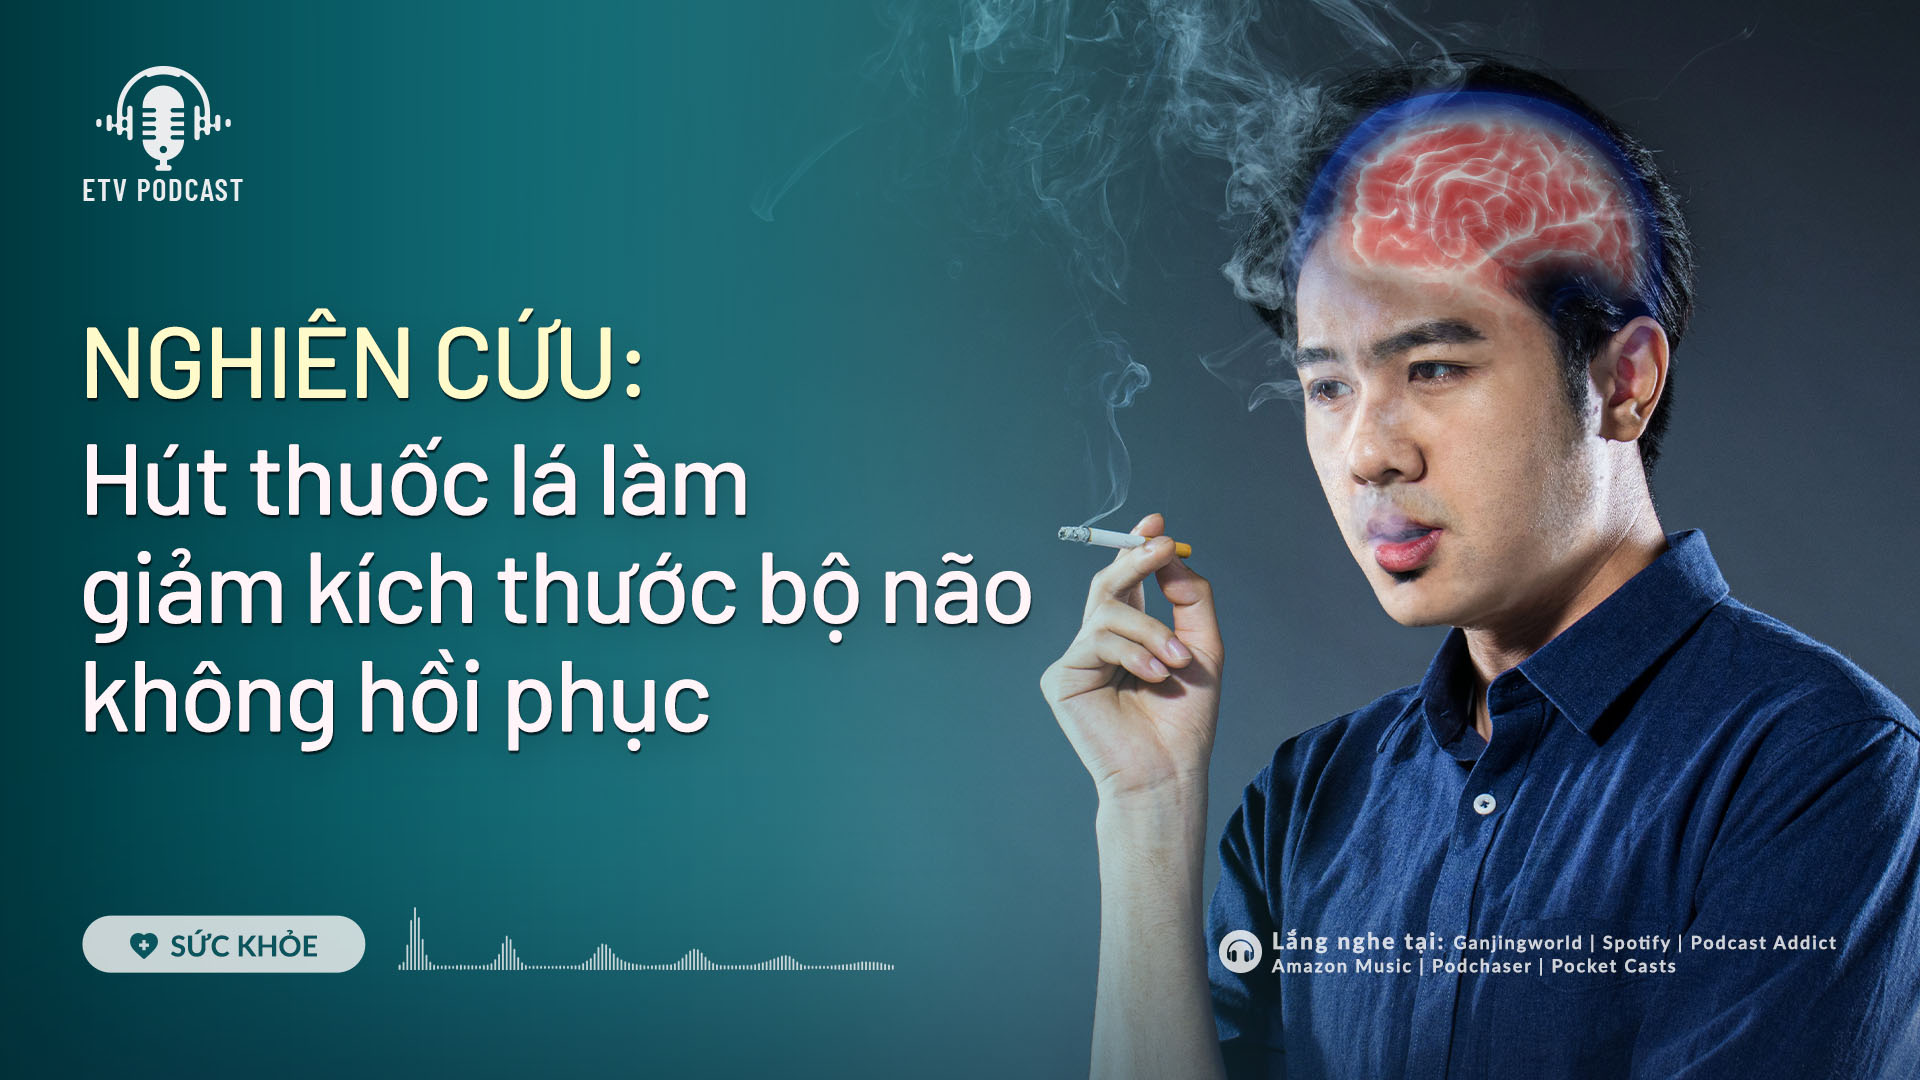 Hút thuốc lá làm giảm kích thước bộ não | Sức khỏe